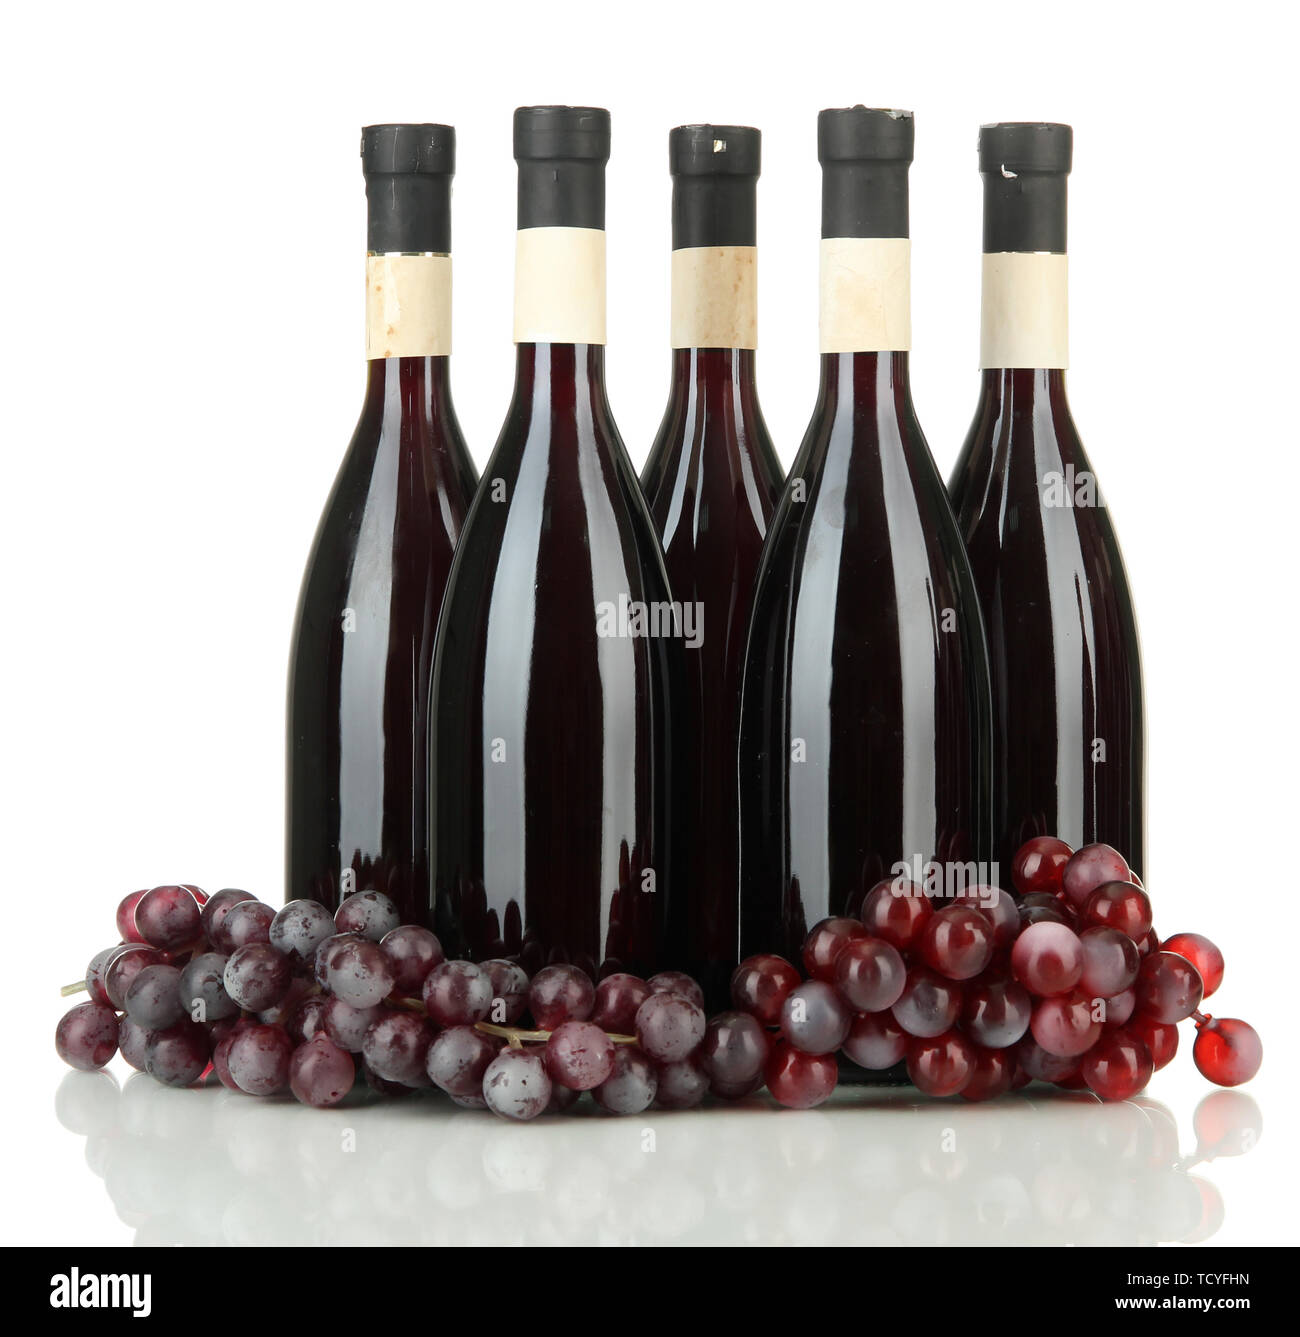 Wine bottles isolated on white Stock Photo